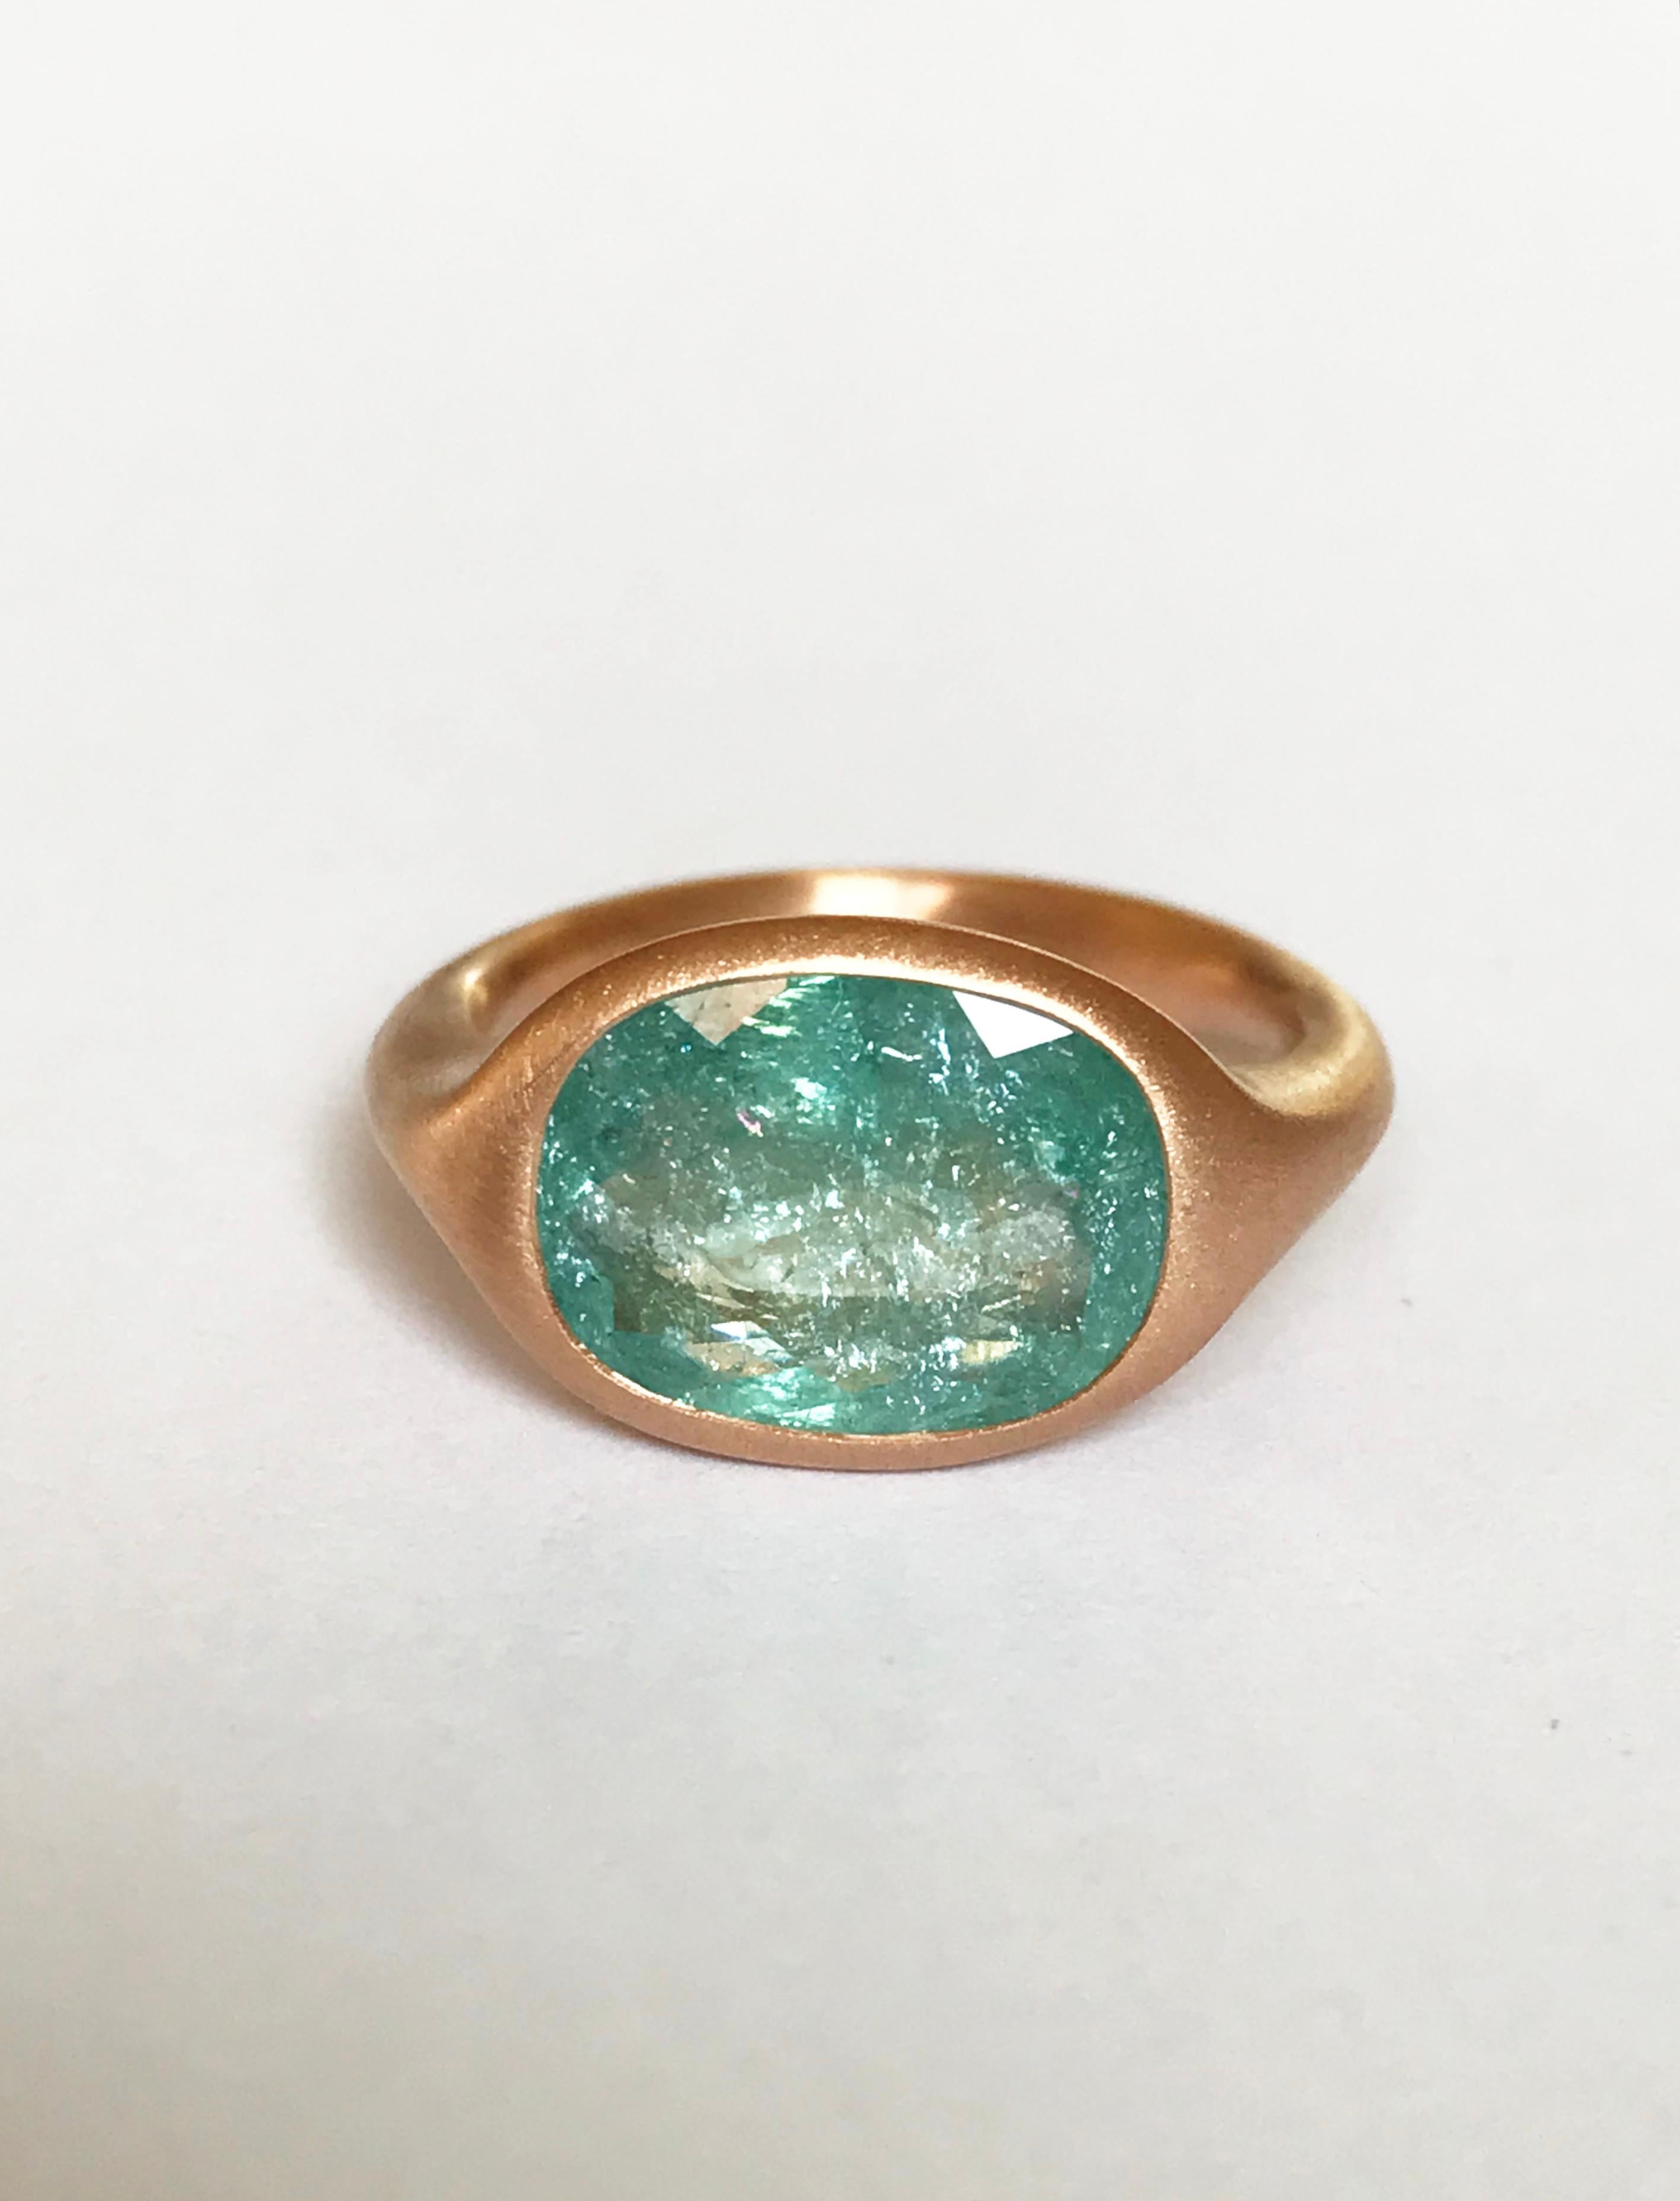 Dalben Design 3.79 carat Paraiba Tourmaline Rose Gold Ring For Sale 7